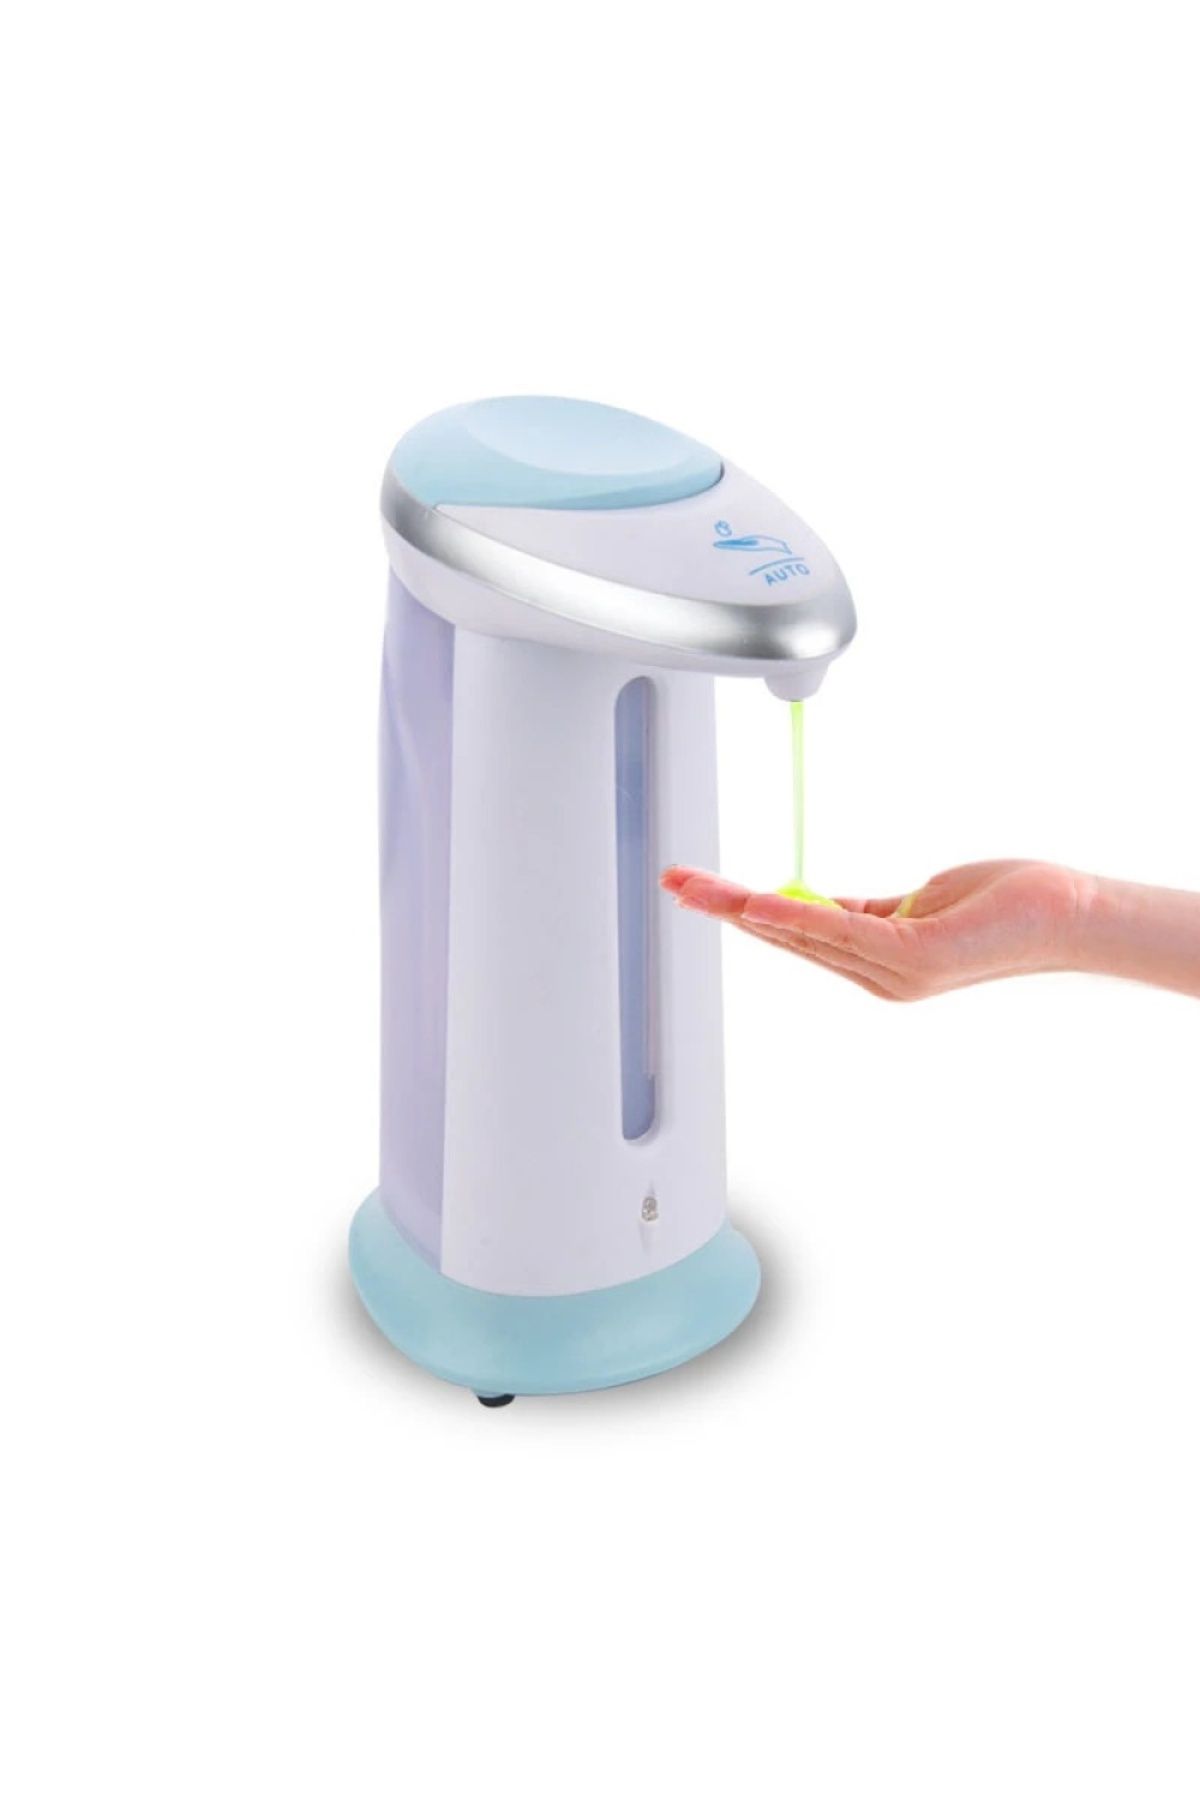 BETO Sensörlü Otomatik Sıvı Sabun Makinesi - Pilli Işıklı Sabun Dispenseri